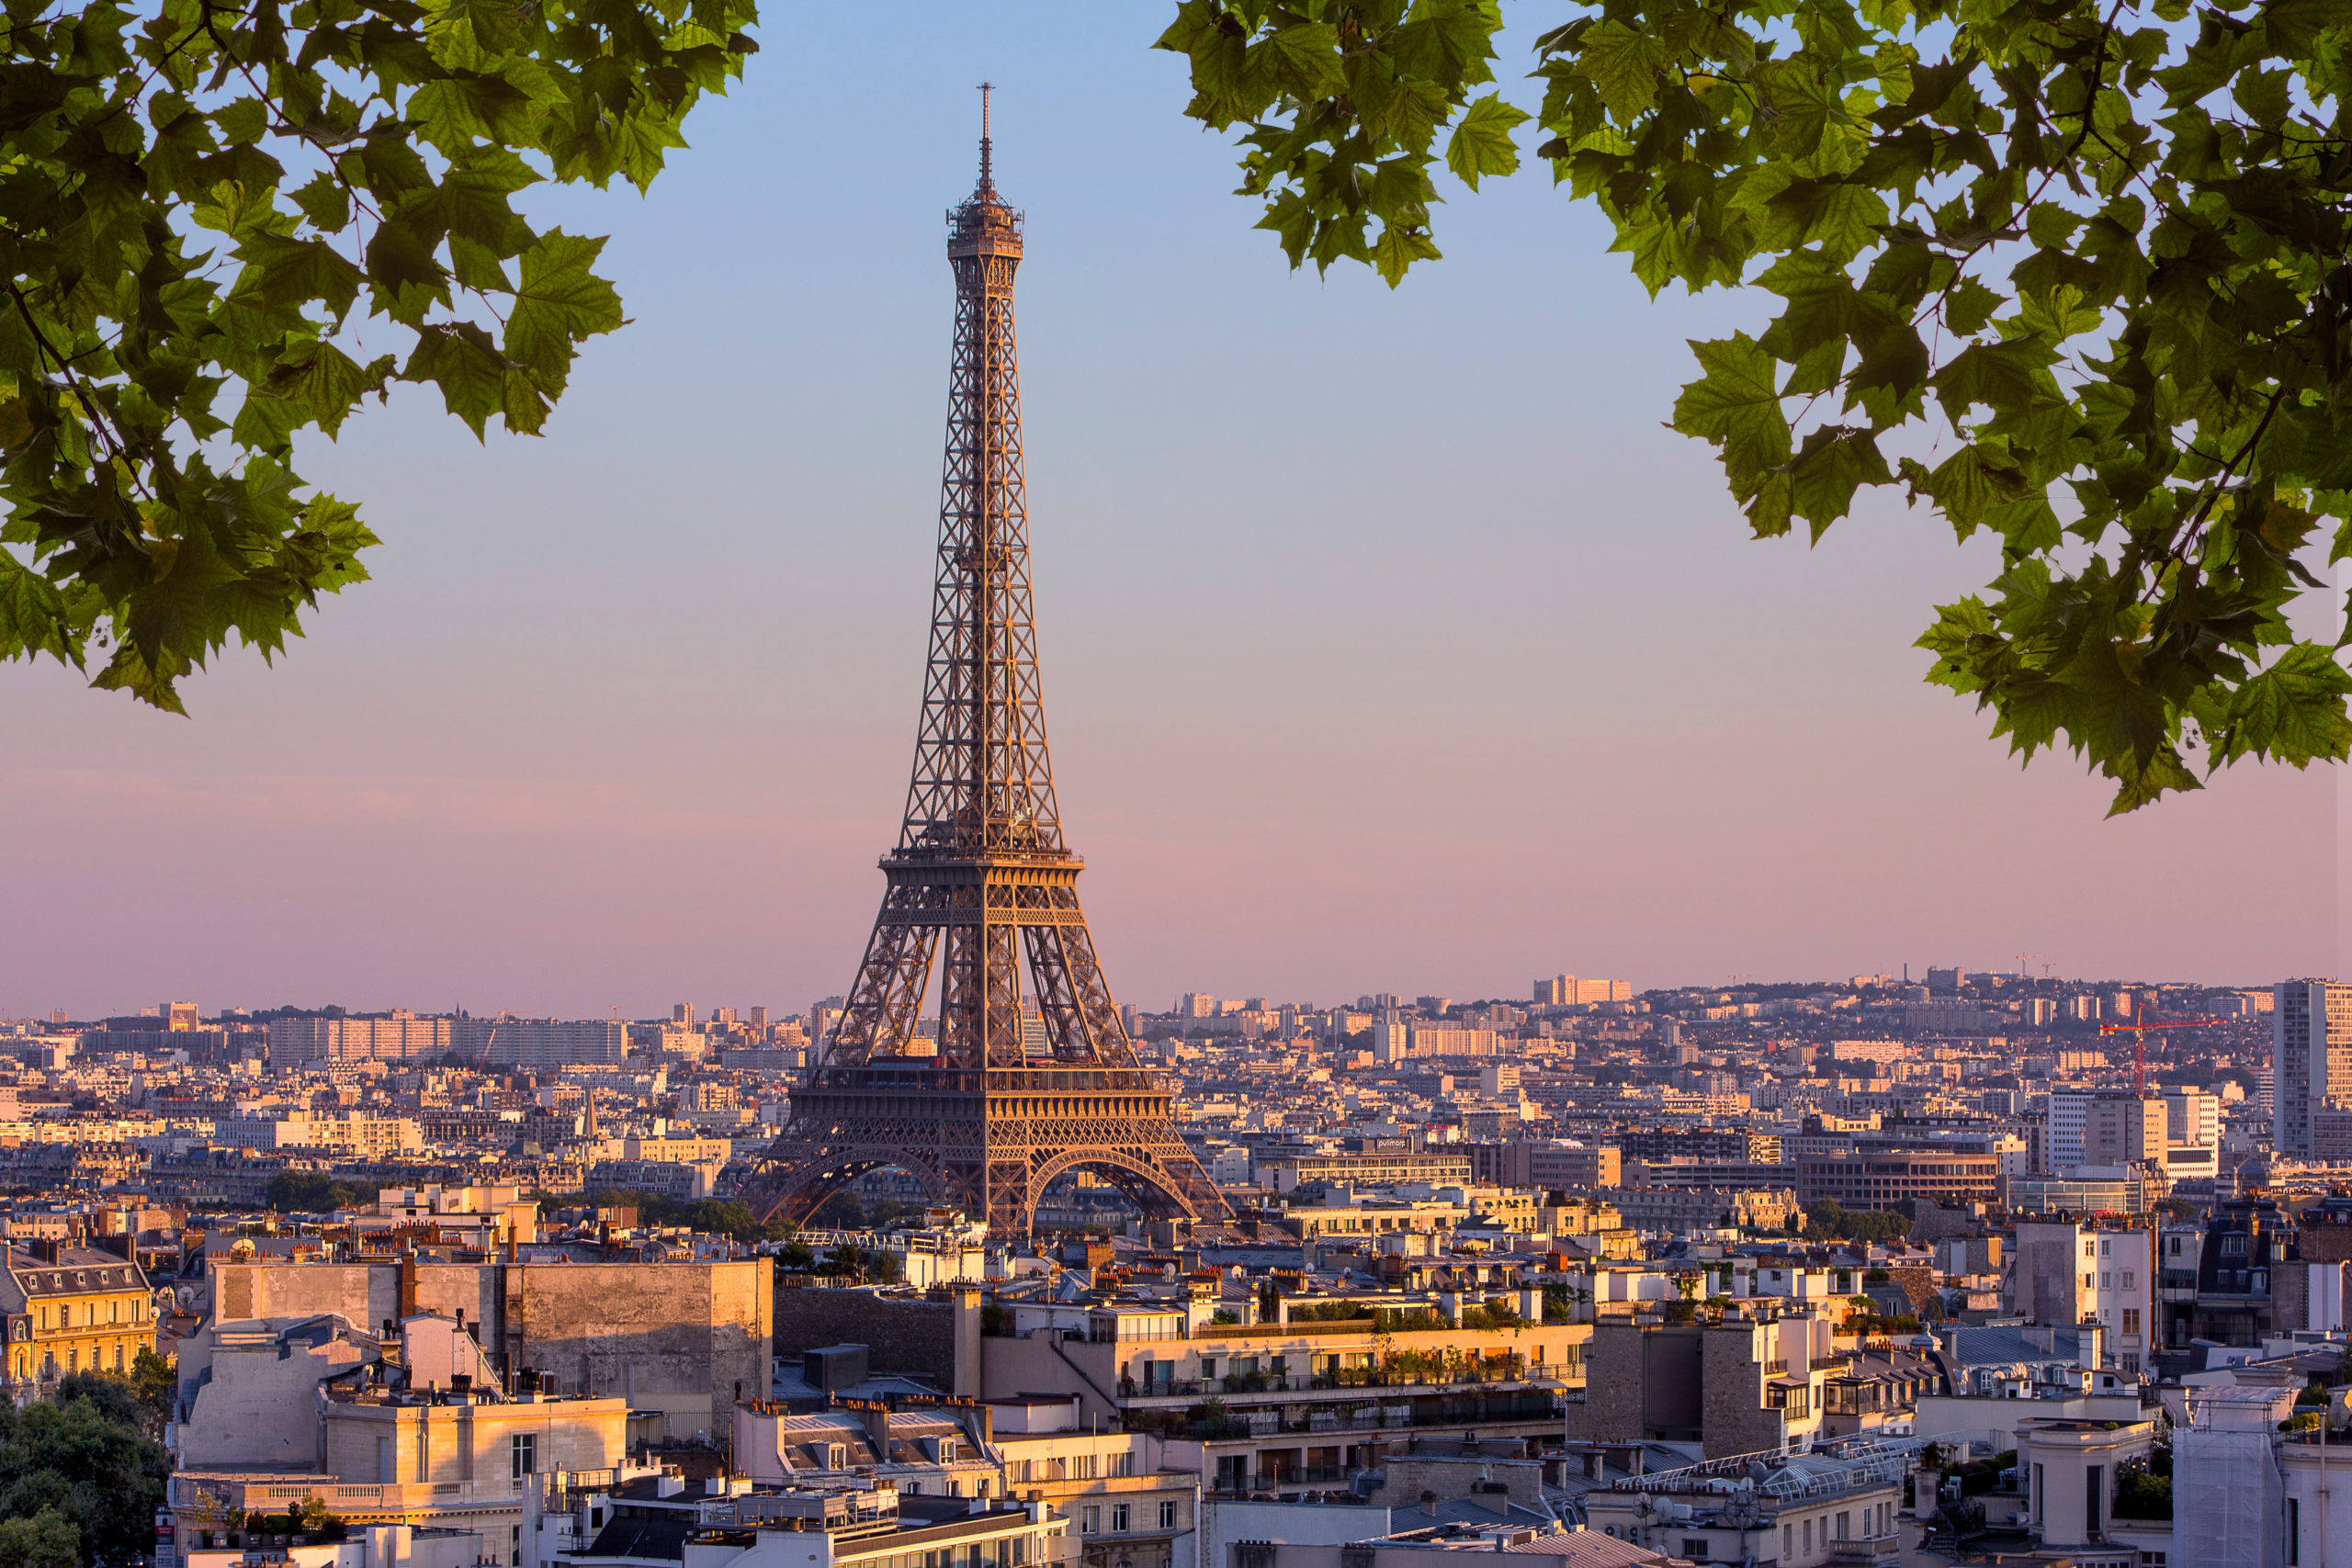 Воплощаем мечты вместе – получаем образование во Франции